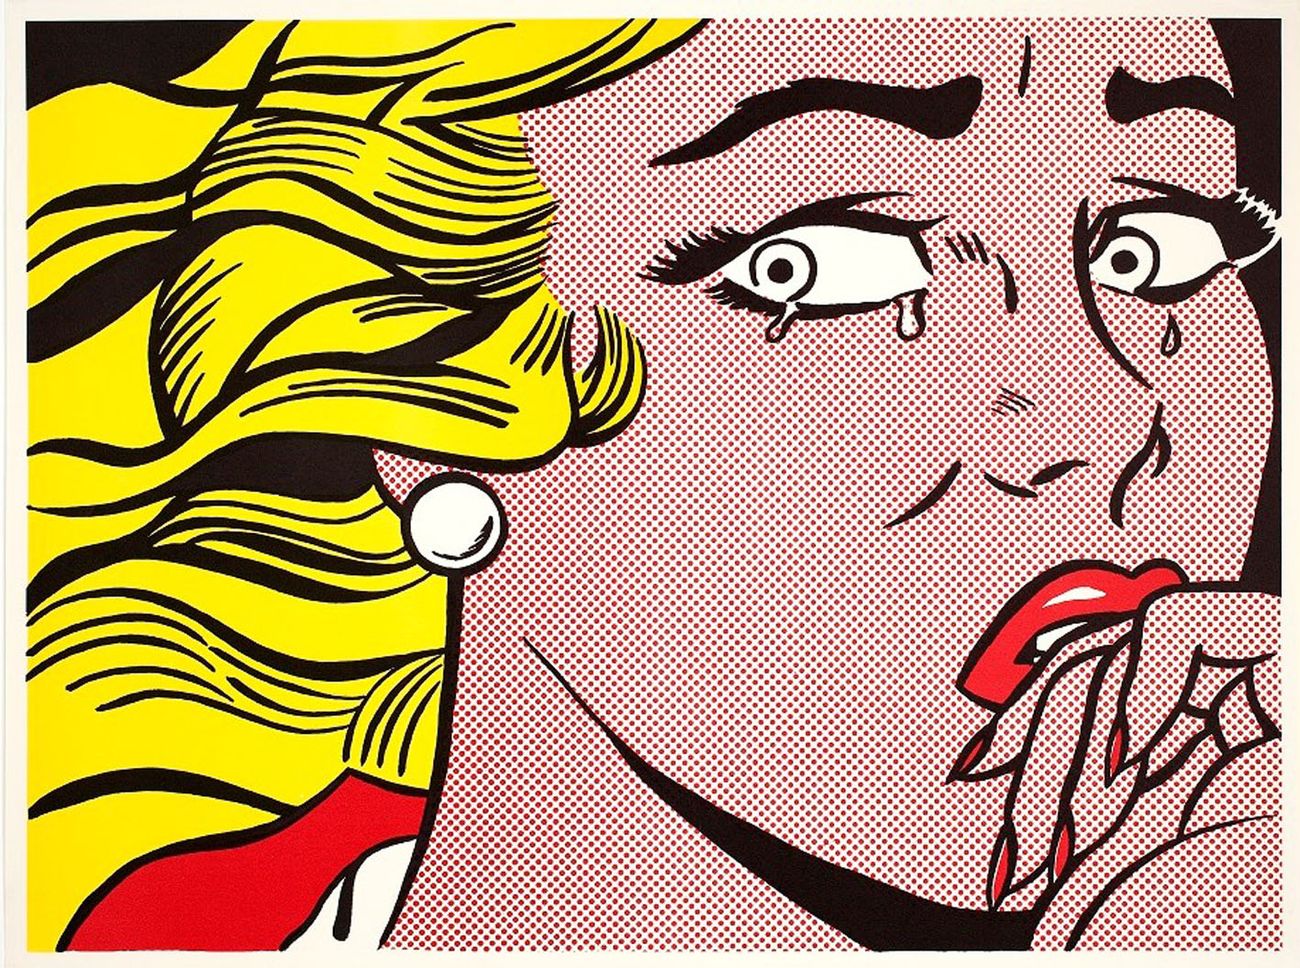 Roy Lichtenstein, Crying Girl, 1963 © Estate of Roy Lichtenstein - SIAE 2018